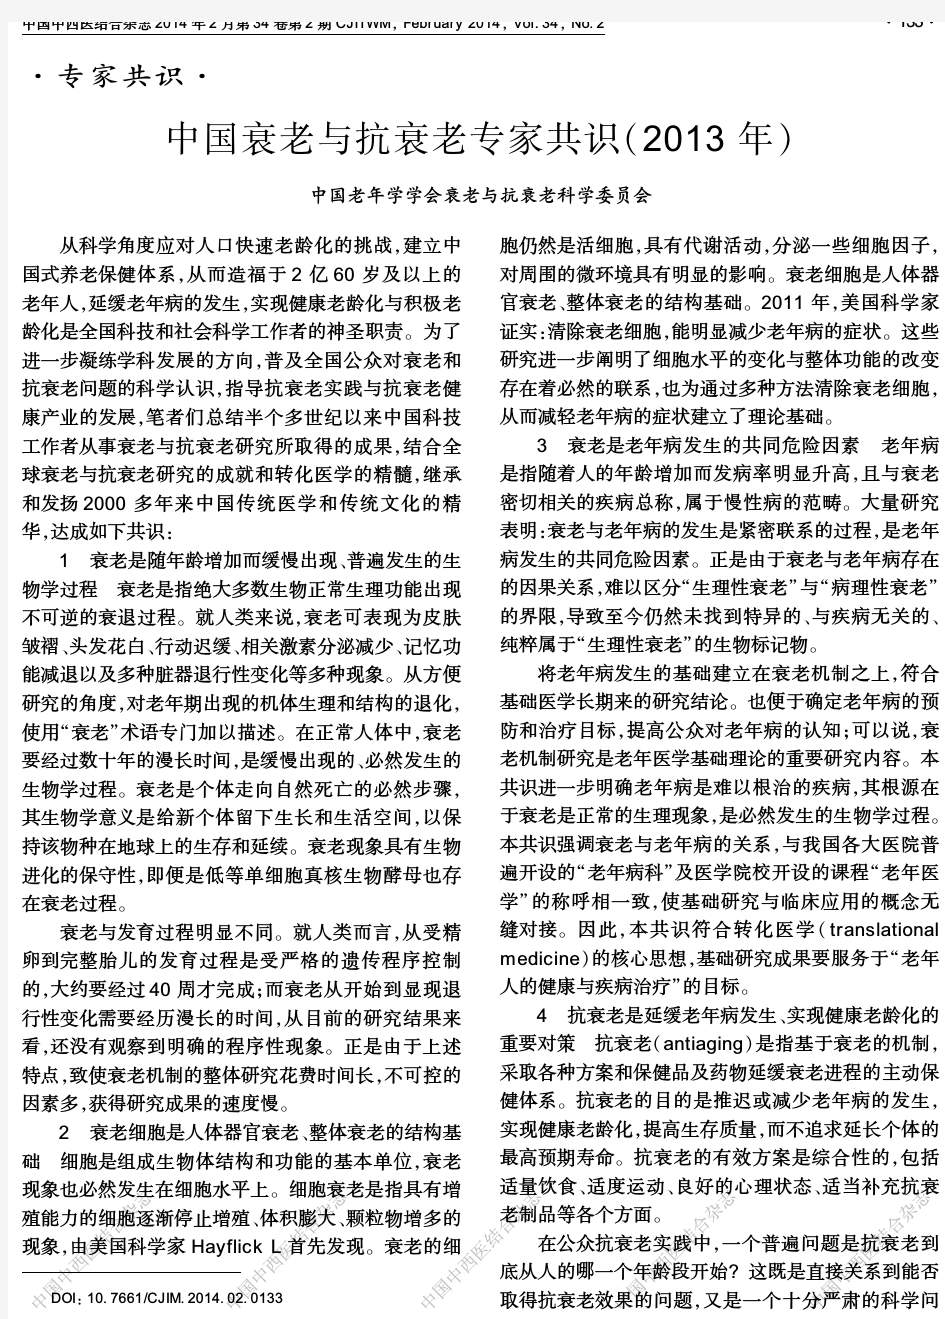 中国衰老与抗衰老专家共识(2013年)